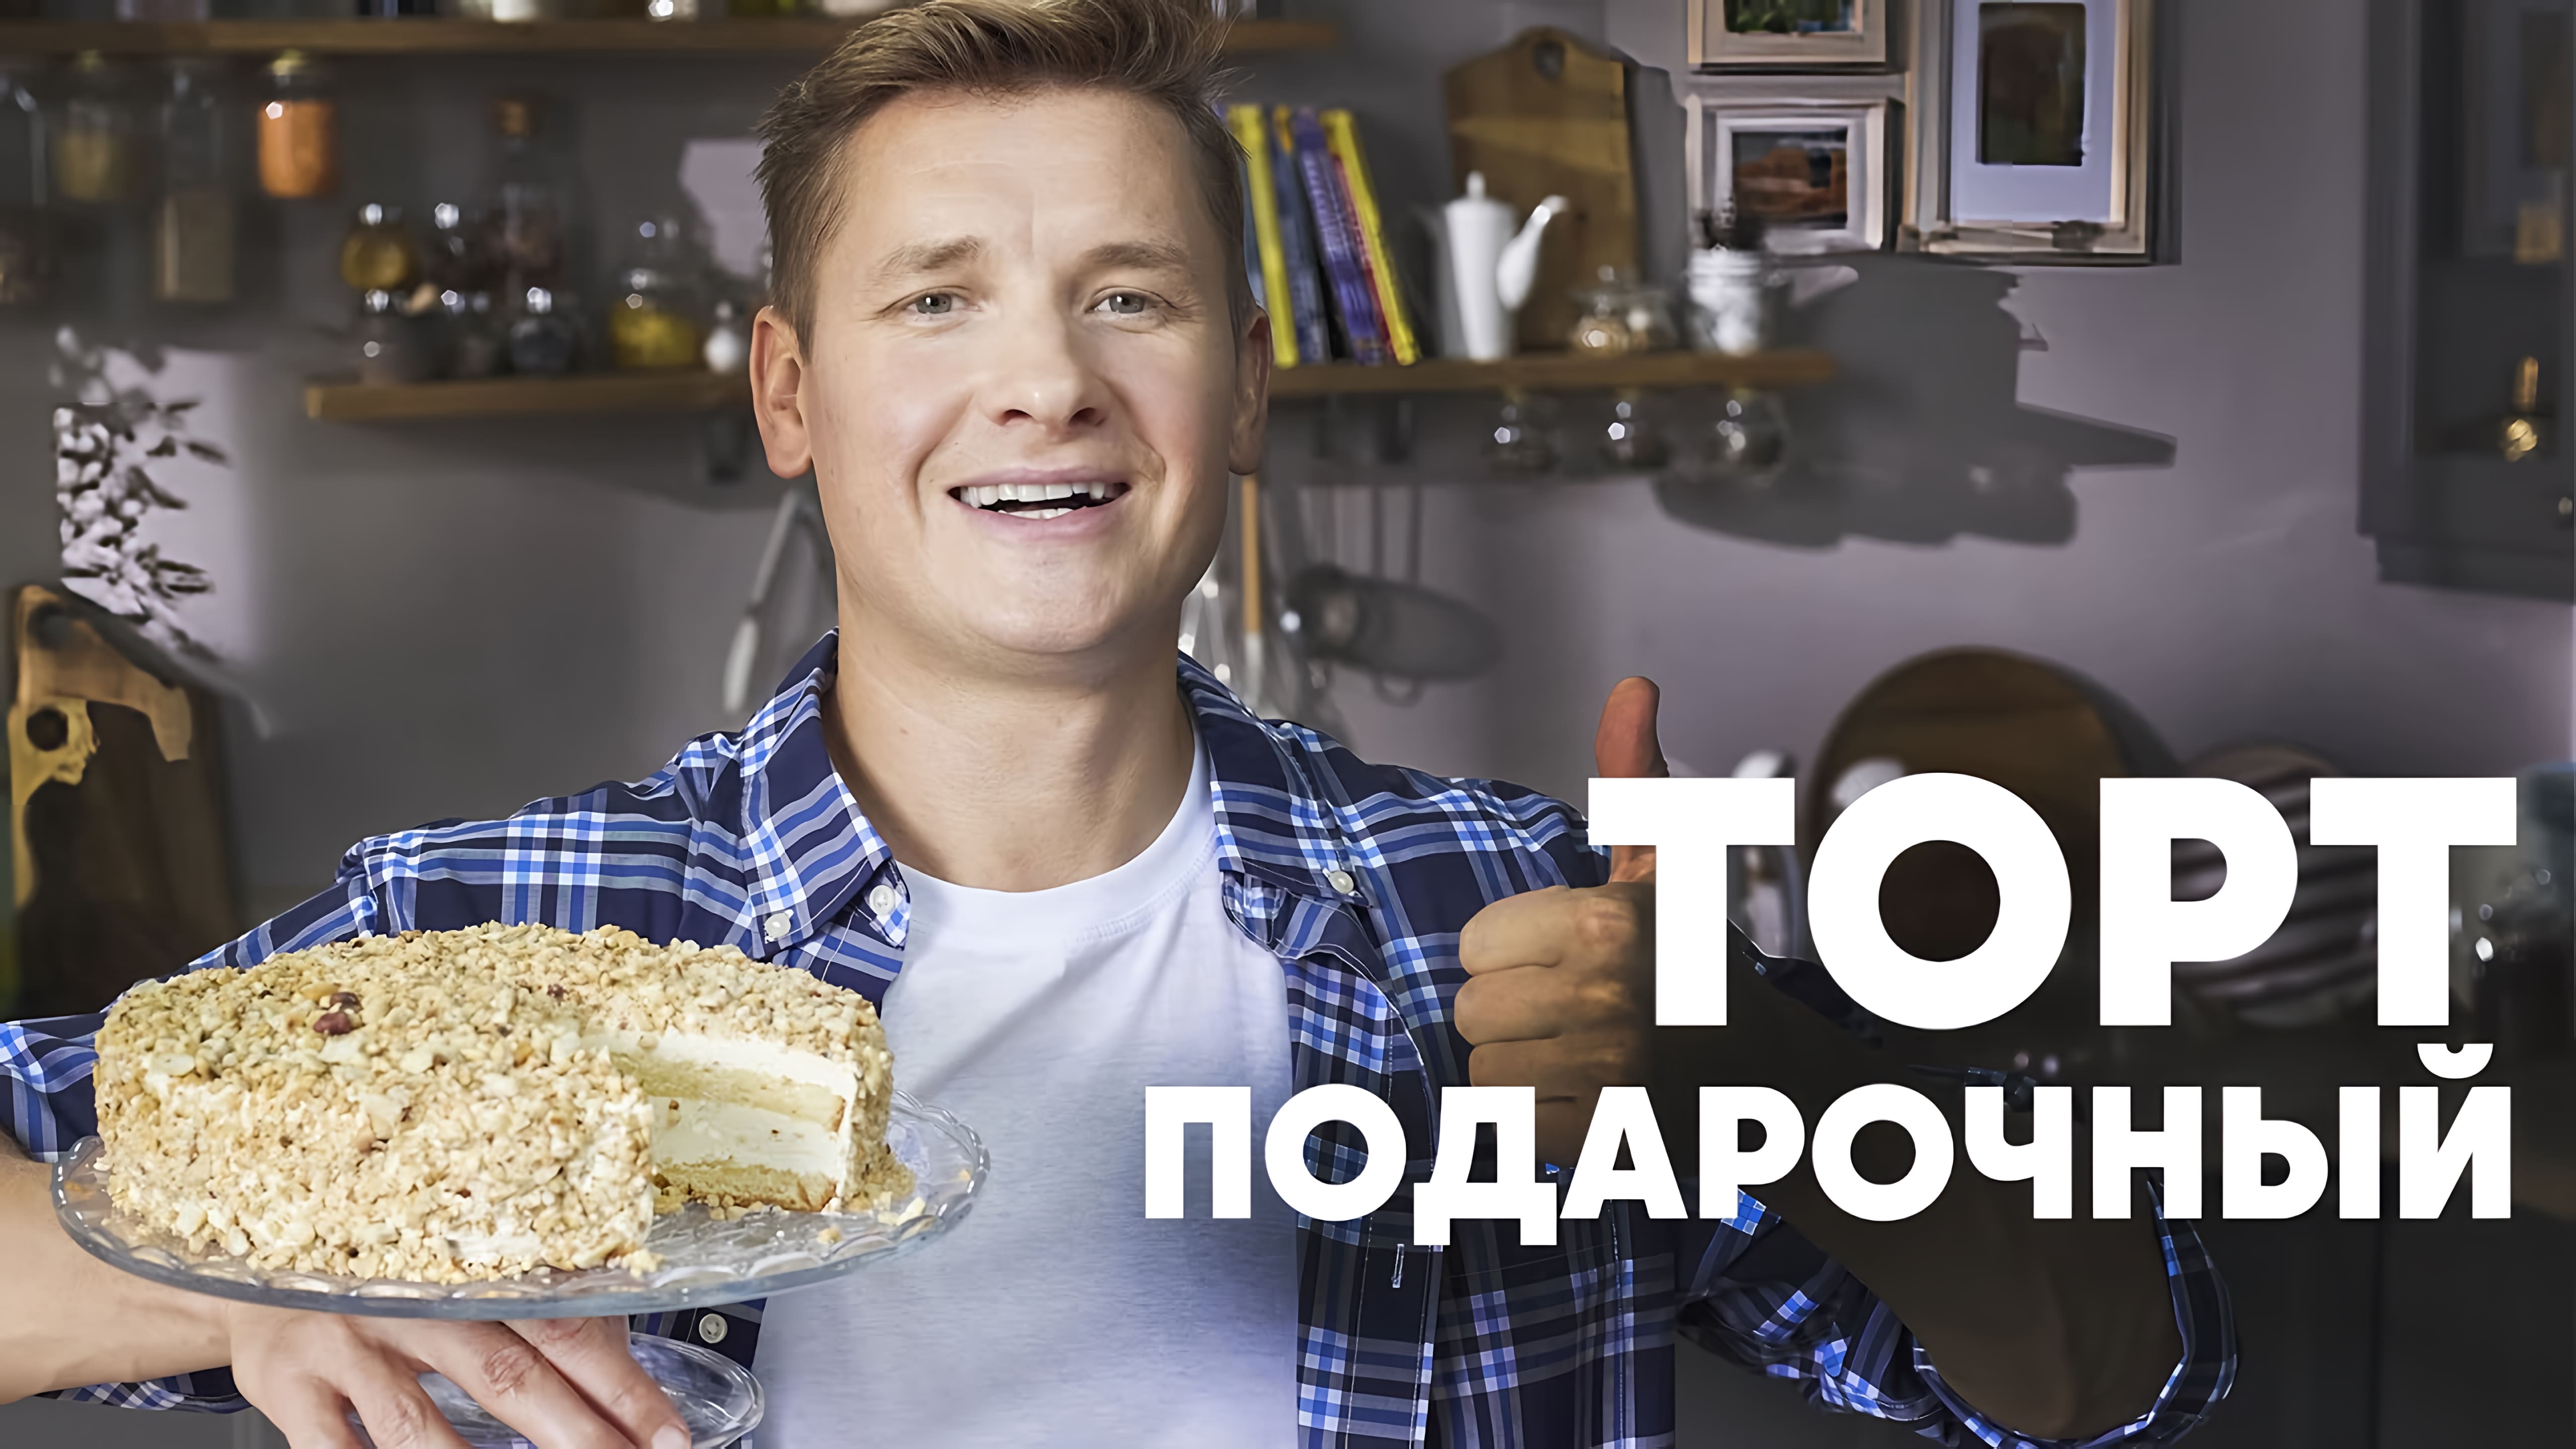 Видео: ТОРТ «ПОДАРОЧНЫЙ» ПО ГОСТу — шефский рецепт от Бельковича! | ПроСто кухня |